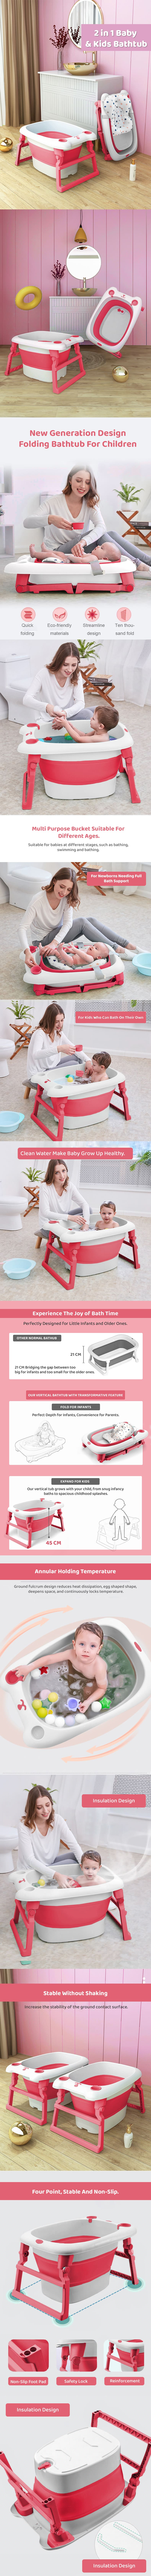 baby bath tub with cushion